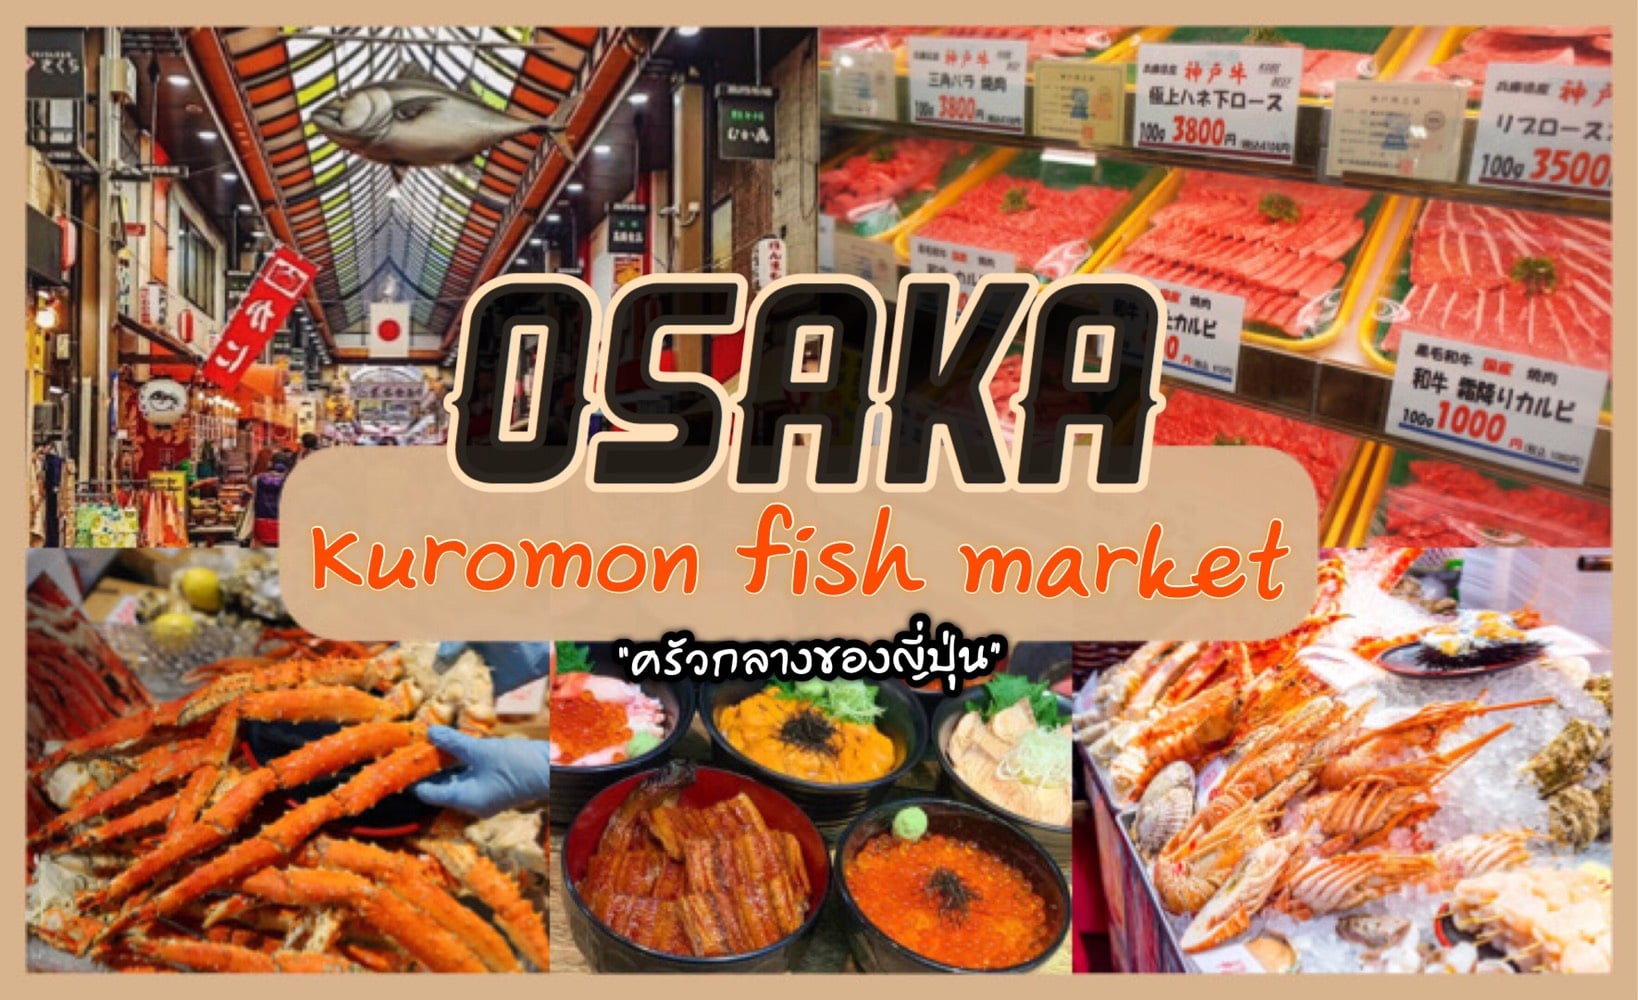 ทัวร์ญี่ปุ่น – “ตลาดปลาคุโรมง แห่งโอซาก้า” เจ้าของฉายา ครัวกลางของญี่ปุ่น !